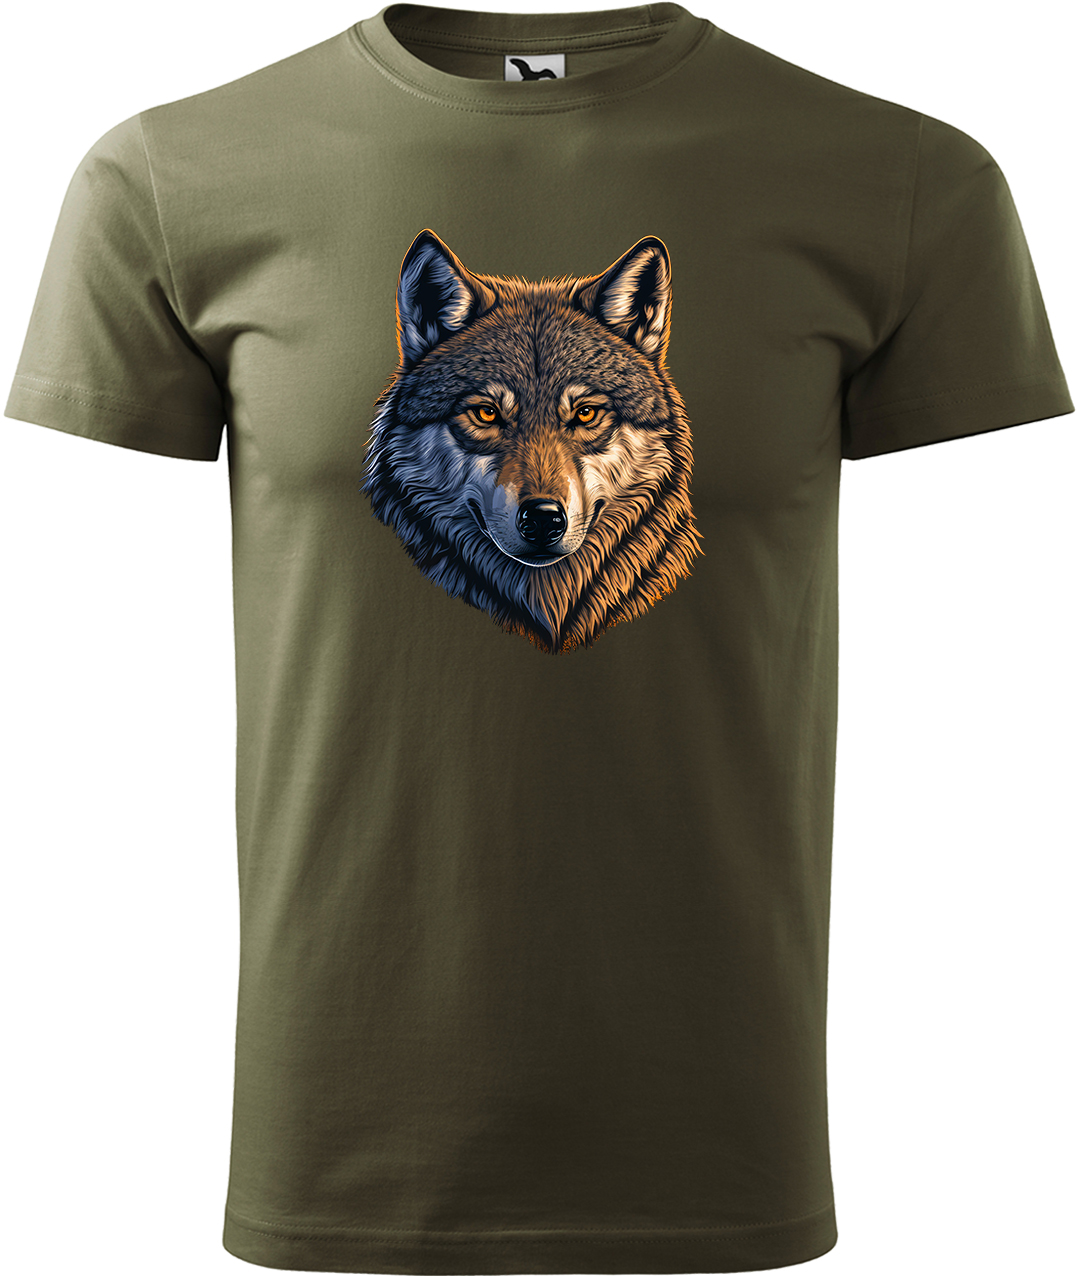 Pánské tričko s vlkem - Hlava vlka Velikost: 3XL, Barva: Military (69), Střih: pánský